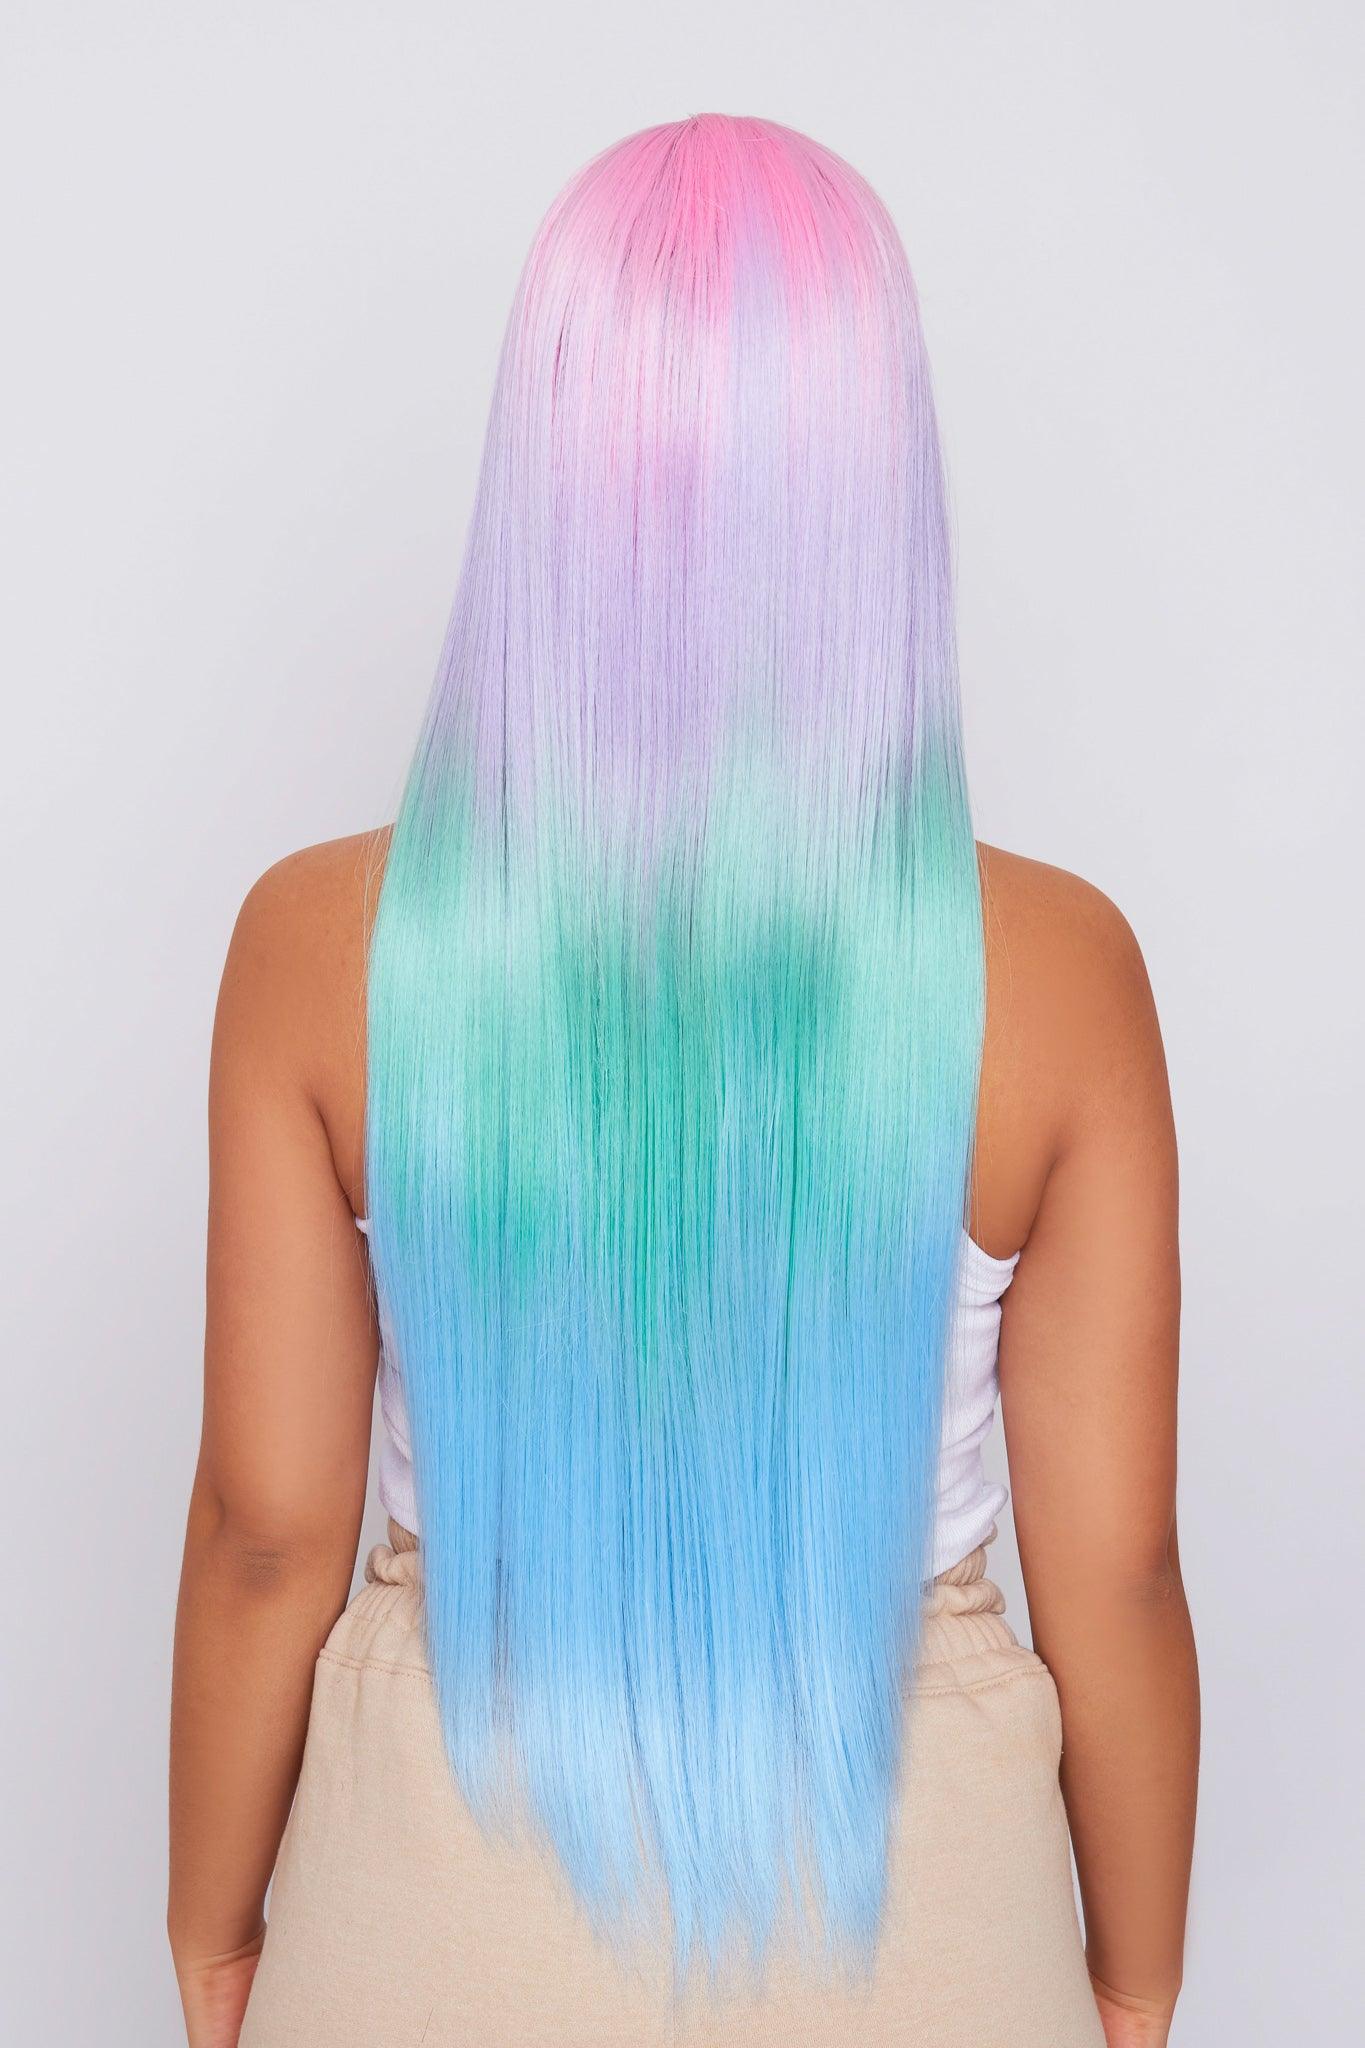 rainbow hair wig from hair brand pbeauty hair